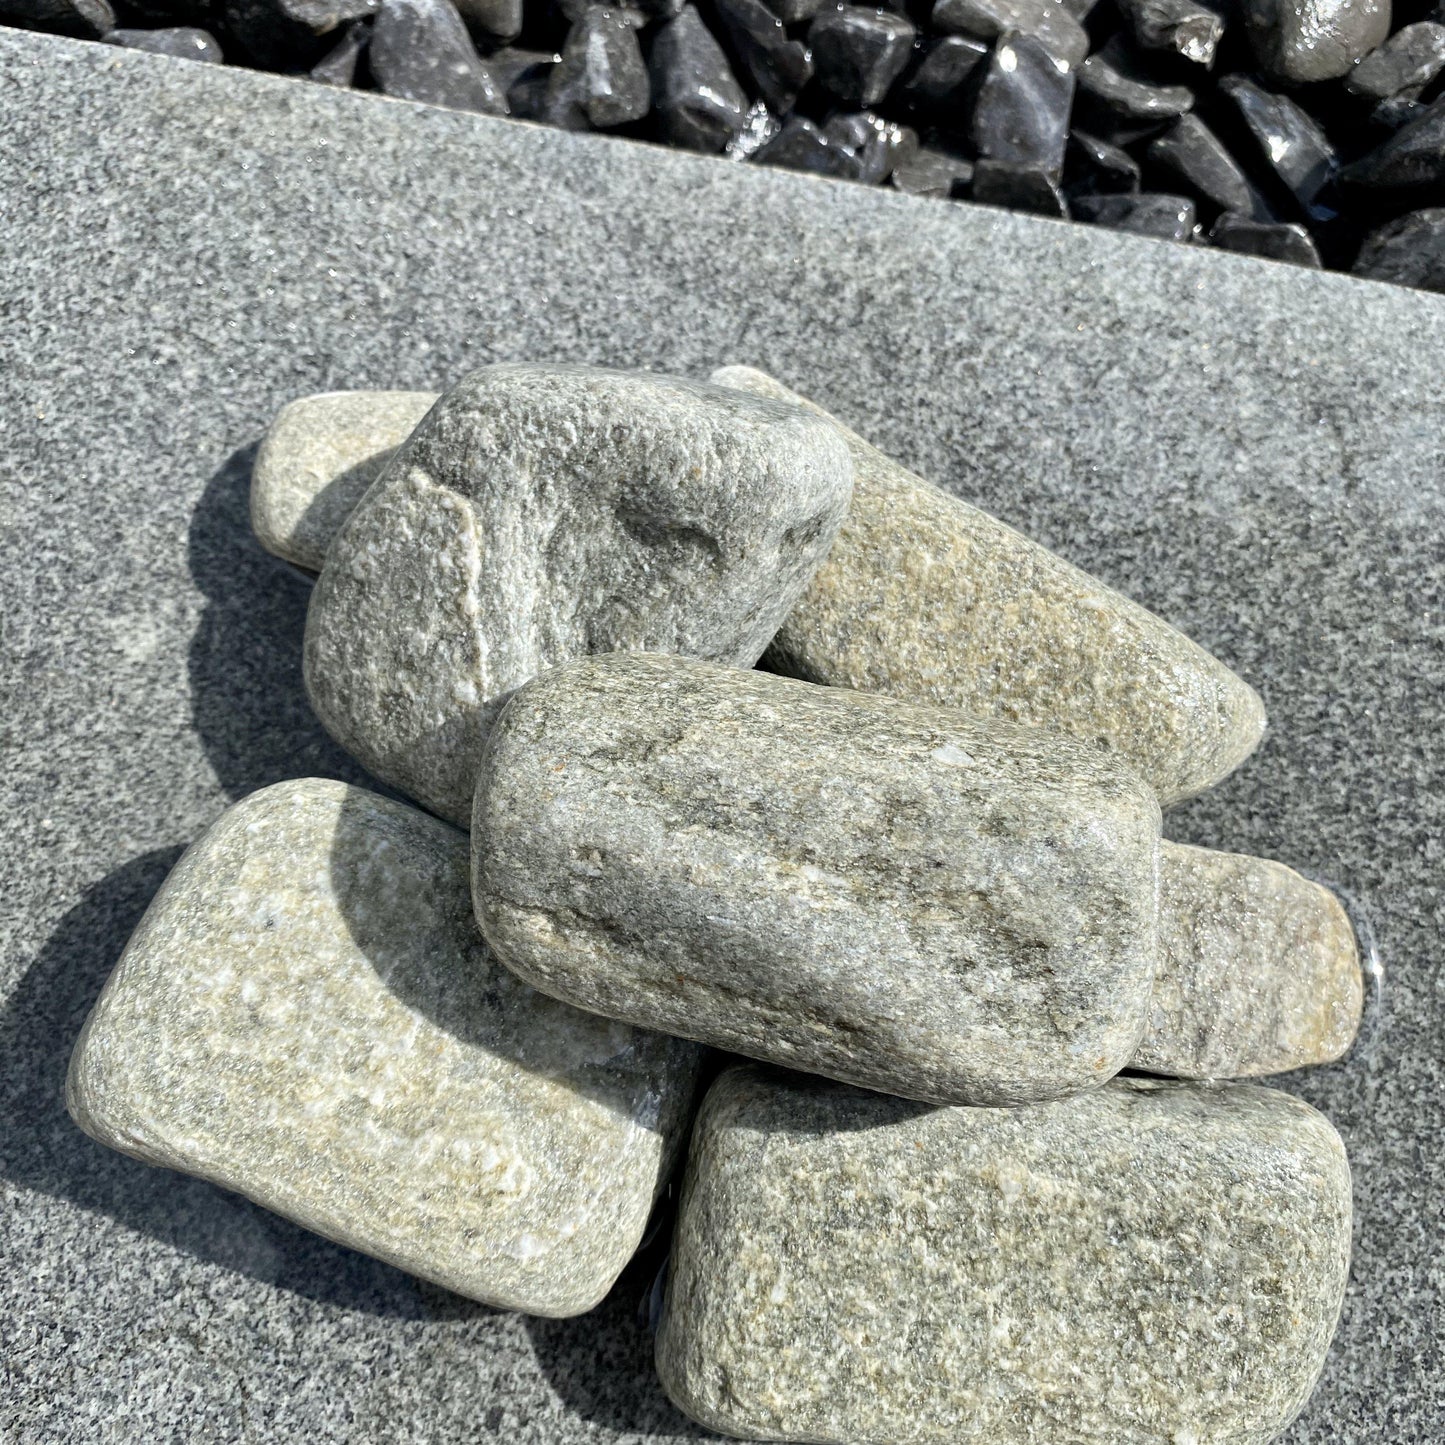 Grey Fish Pebbles-Pebble-Stones4Gardens-stones4gardens